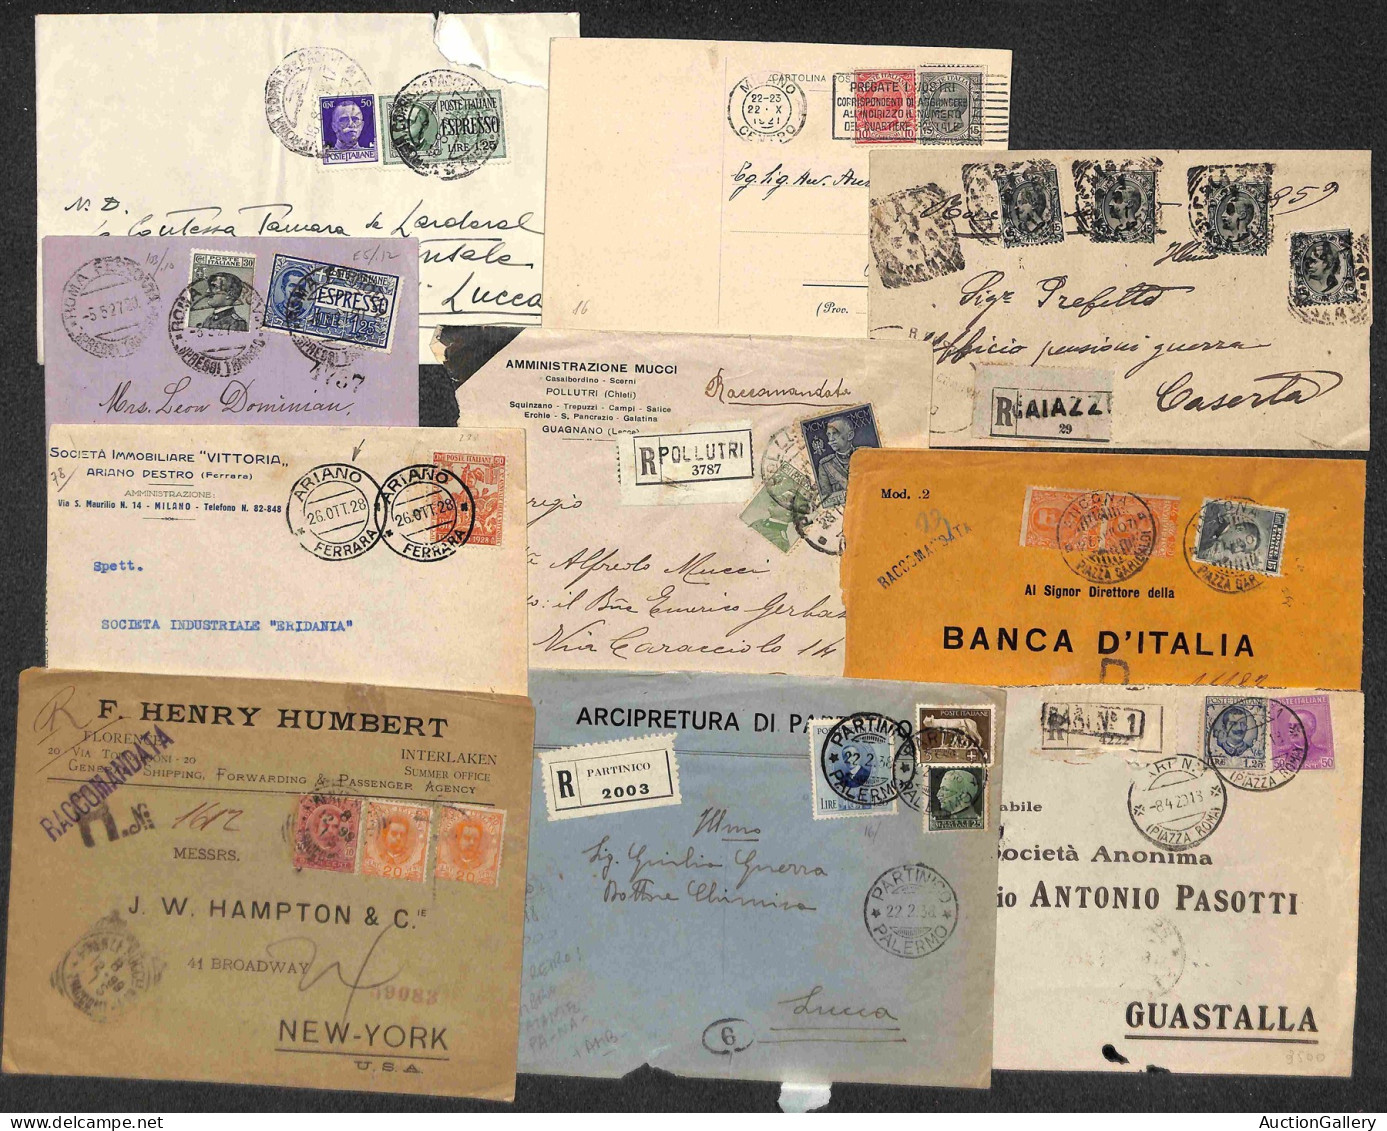 Lotti&Collezioni - Area Italiana - REGNO - 1876/1943 - Lotto di 87 oggetti postali (lettere + cartoline + interi postali